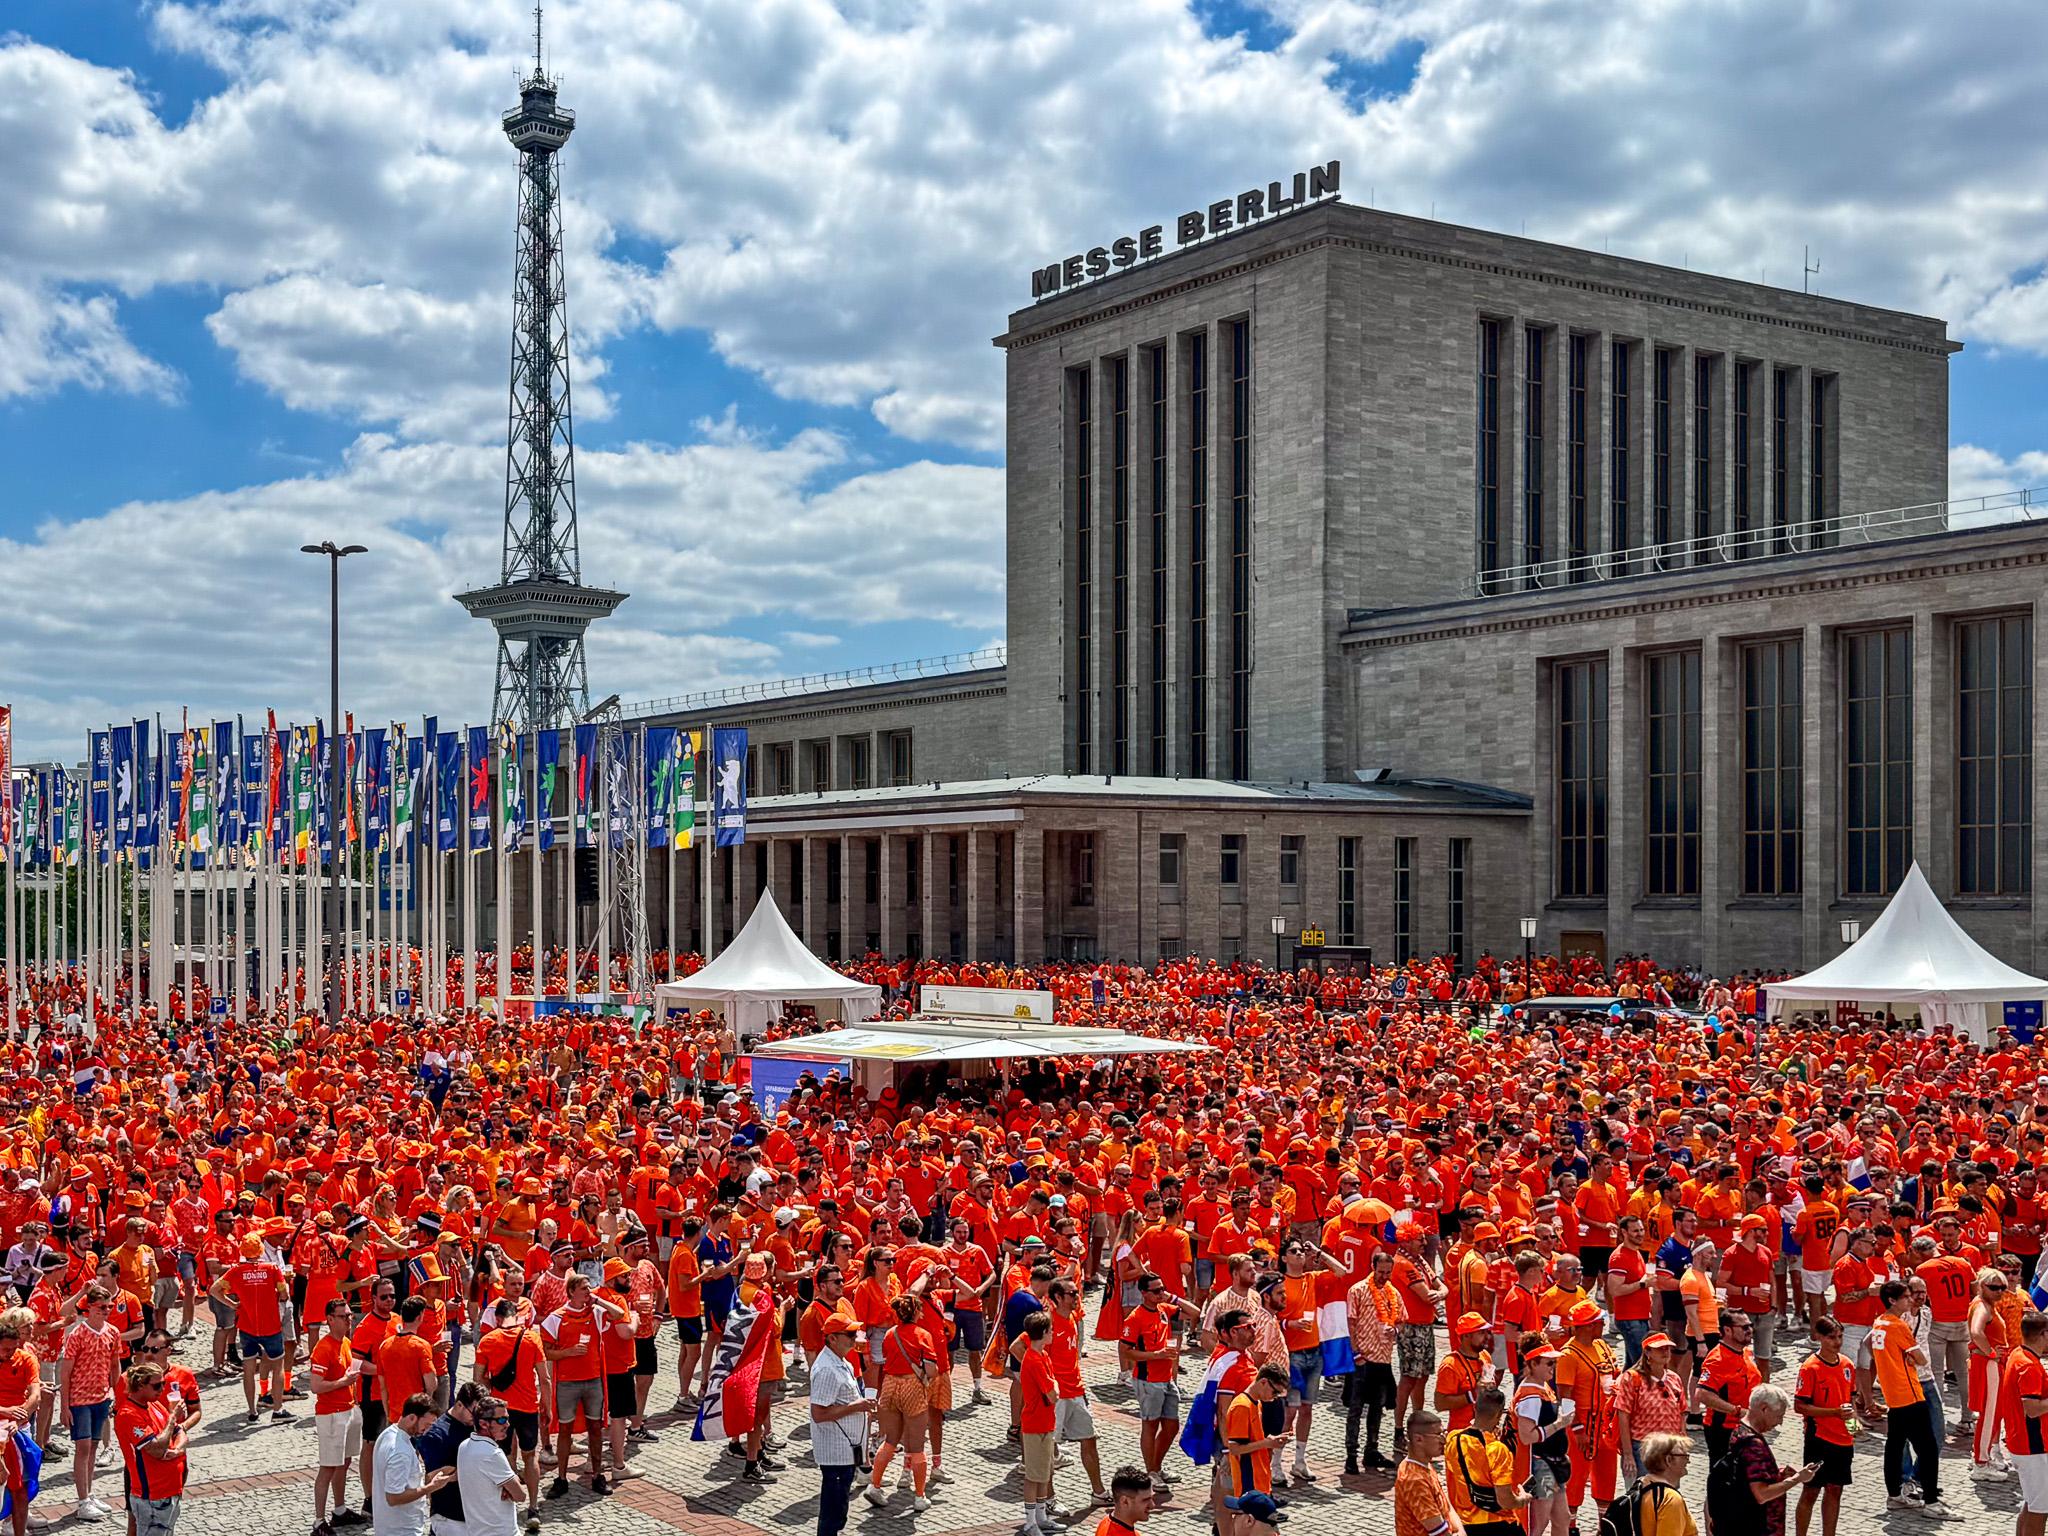 Eingang Nord der Messe Berlin mit allen Holland-Fans